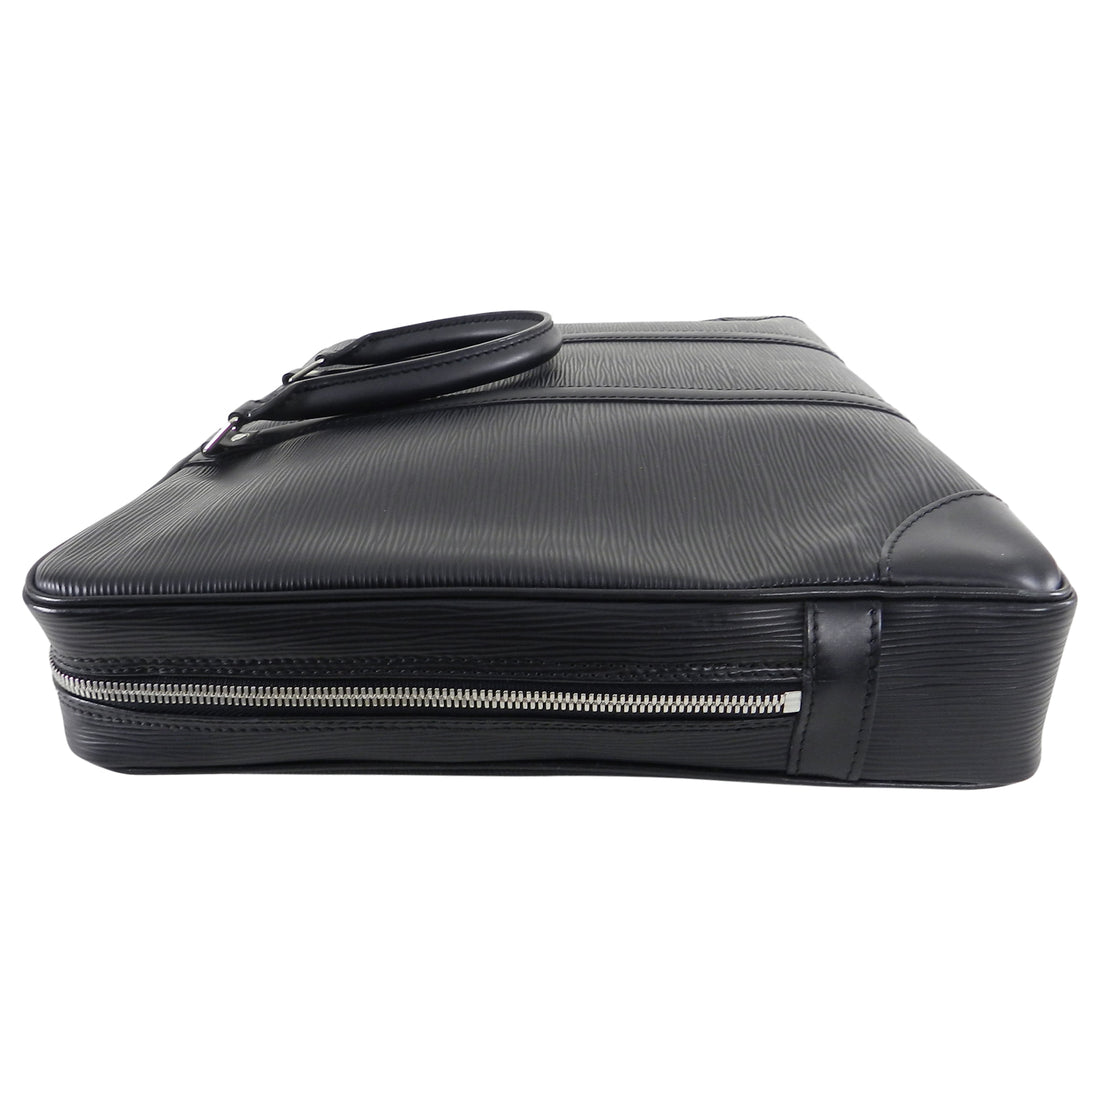 Louis Vuitton Black Epi Porte Documents Voyage Laptop Bag – I MISS YOU VINTAGE